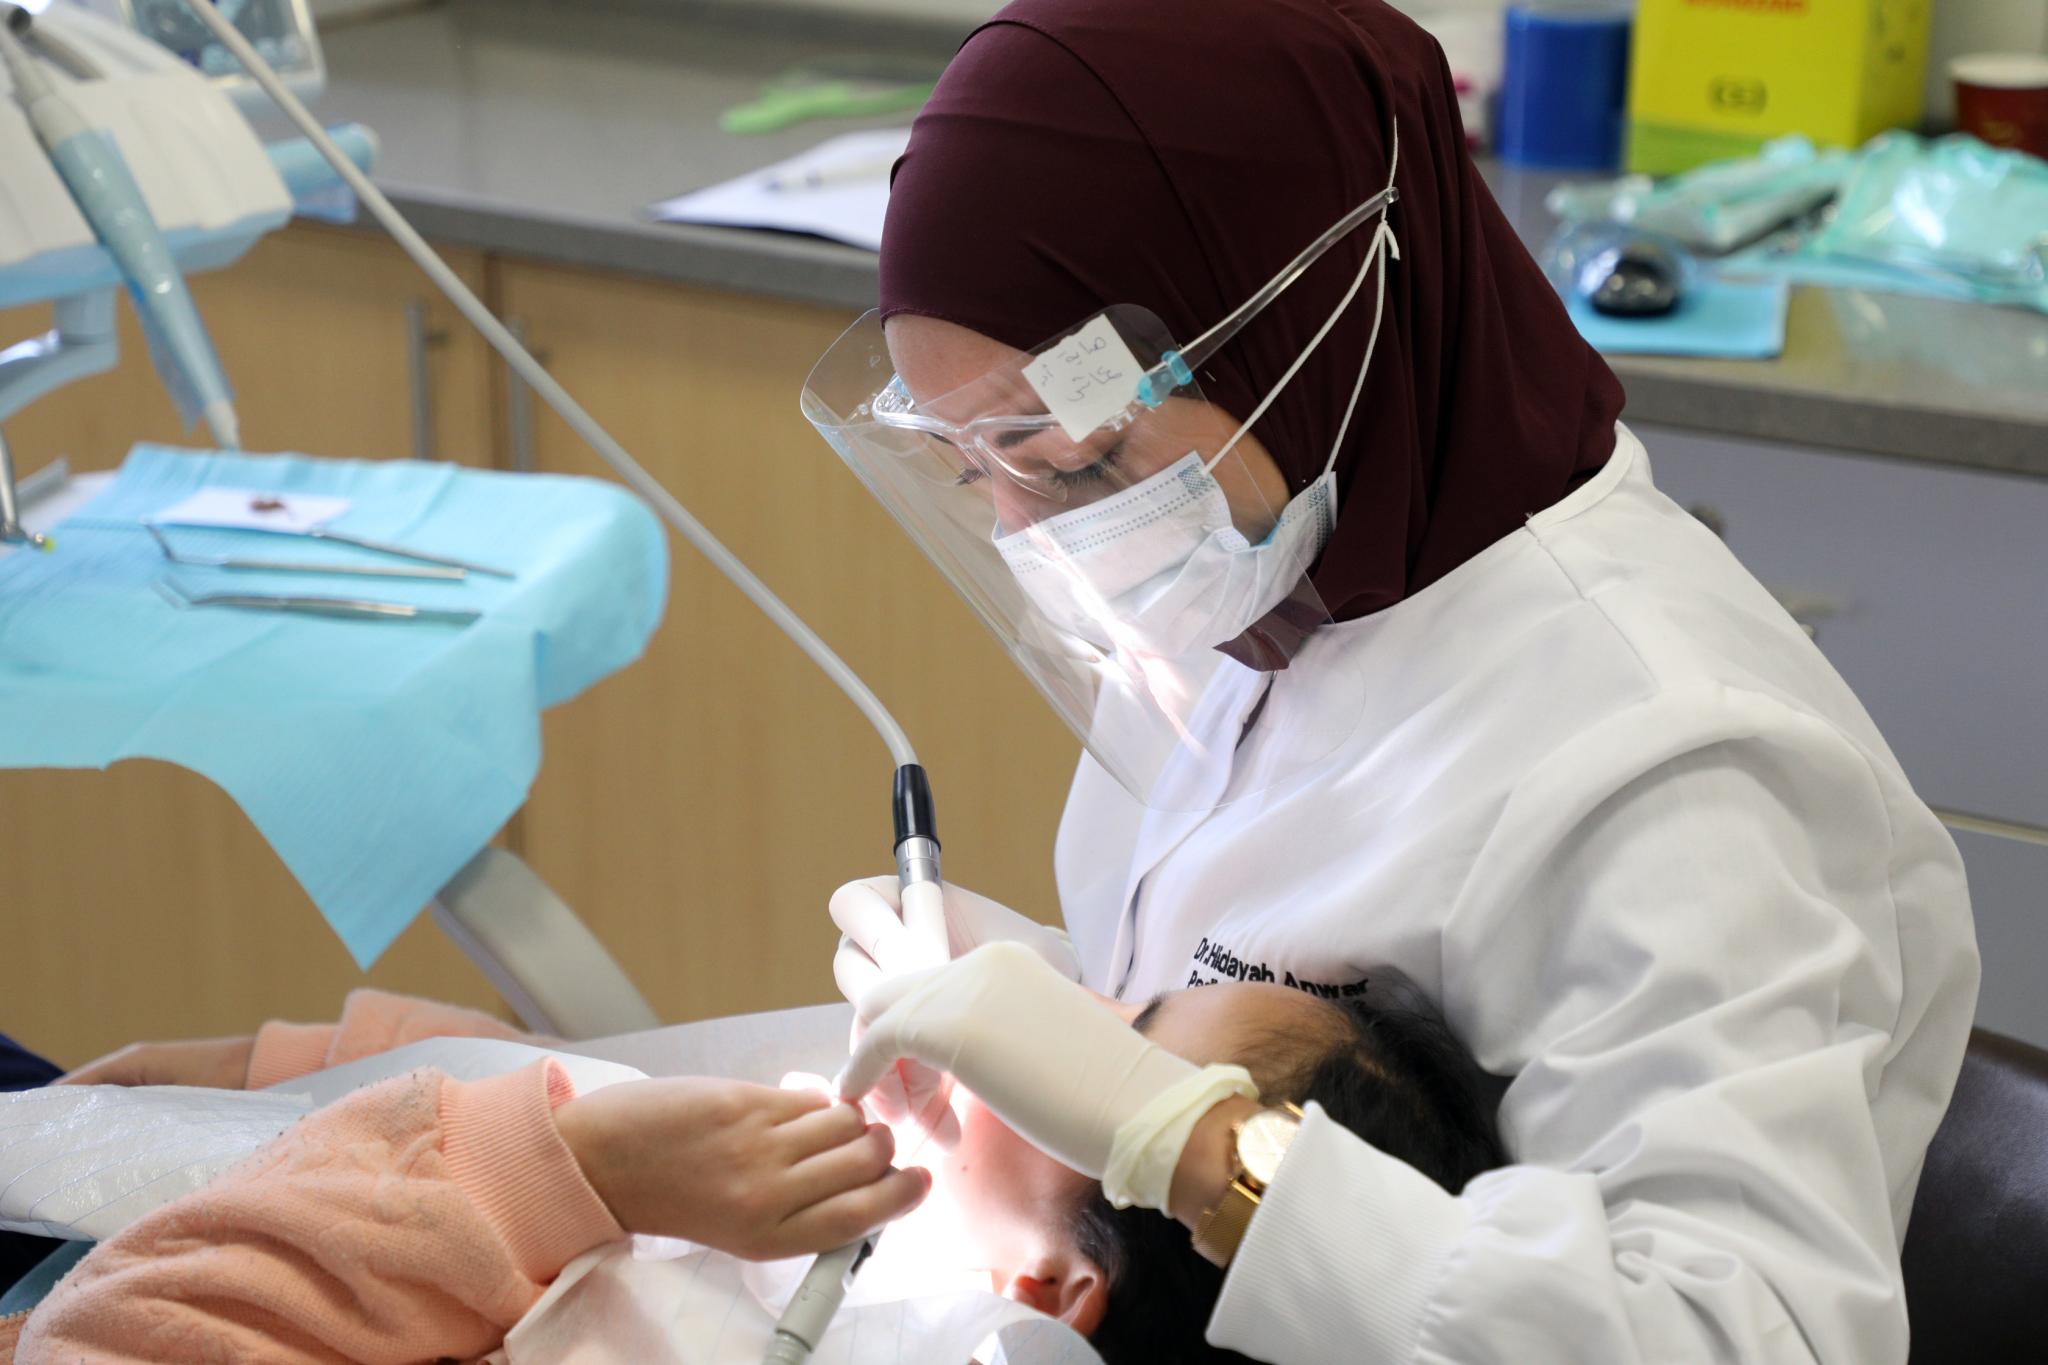 عيادات الاسنان - المركز الطبي في حرم الجامعة برام الله